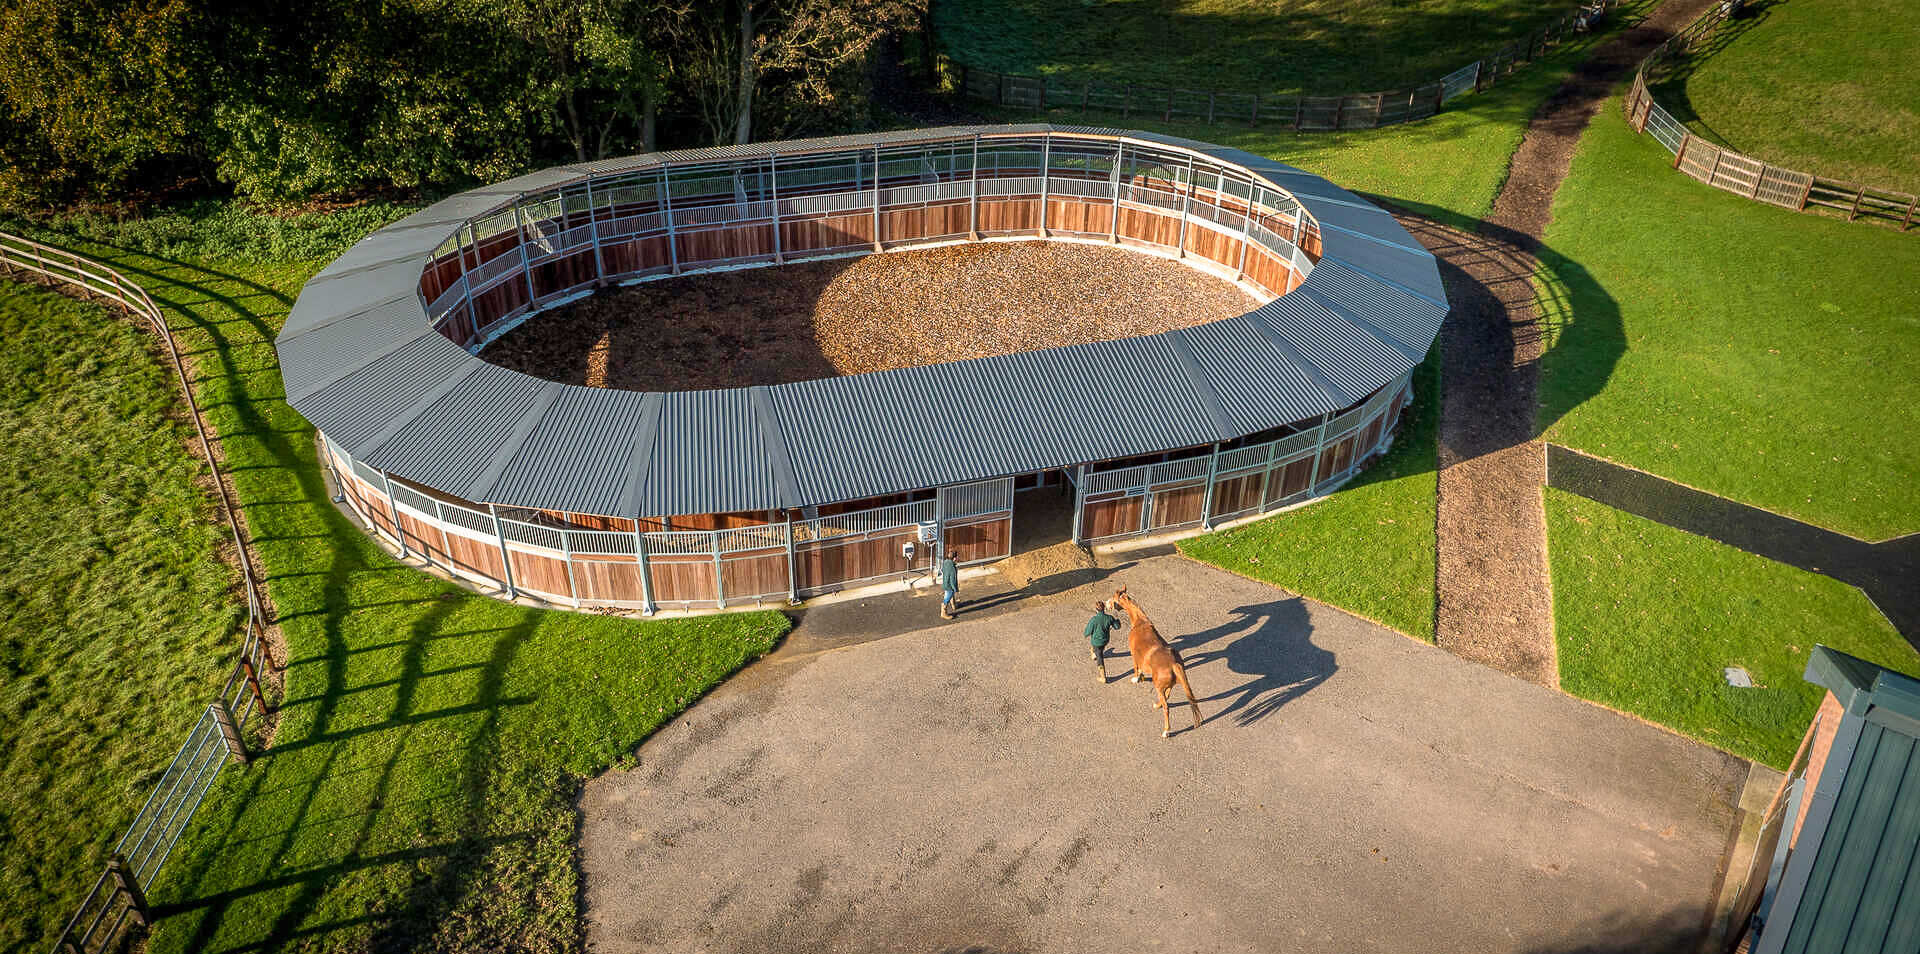 Röwer & Rüb ovale Führanlage von oben, anthrazit Dach Pferd wird hineingeführt